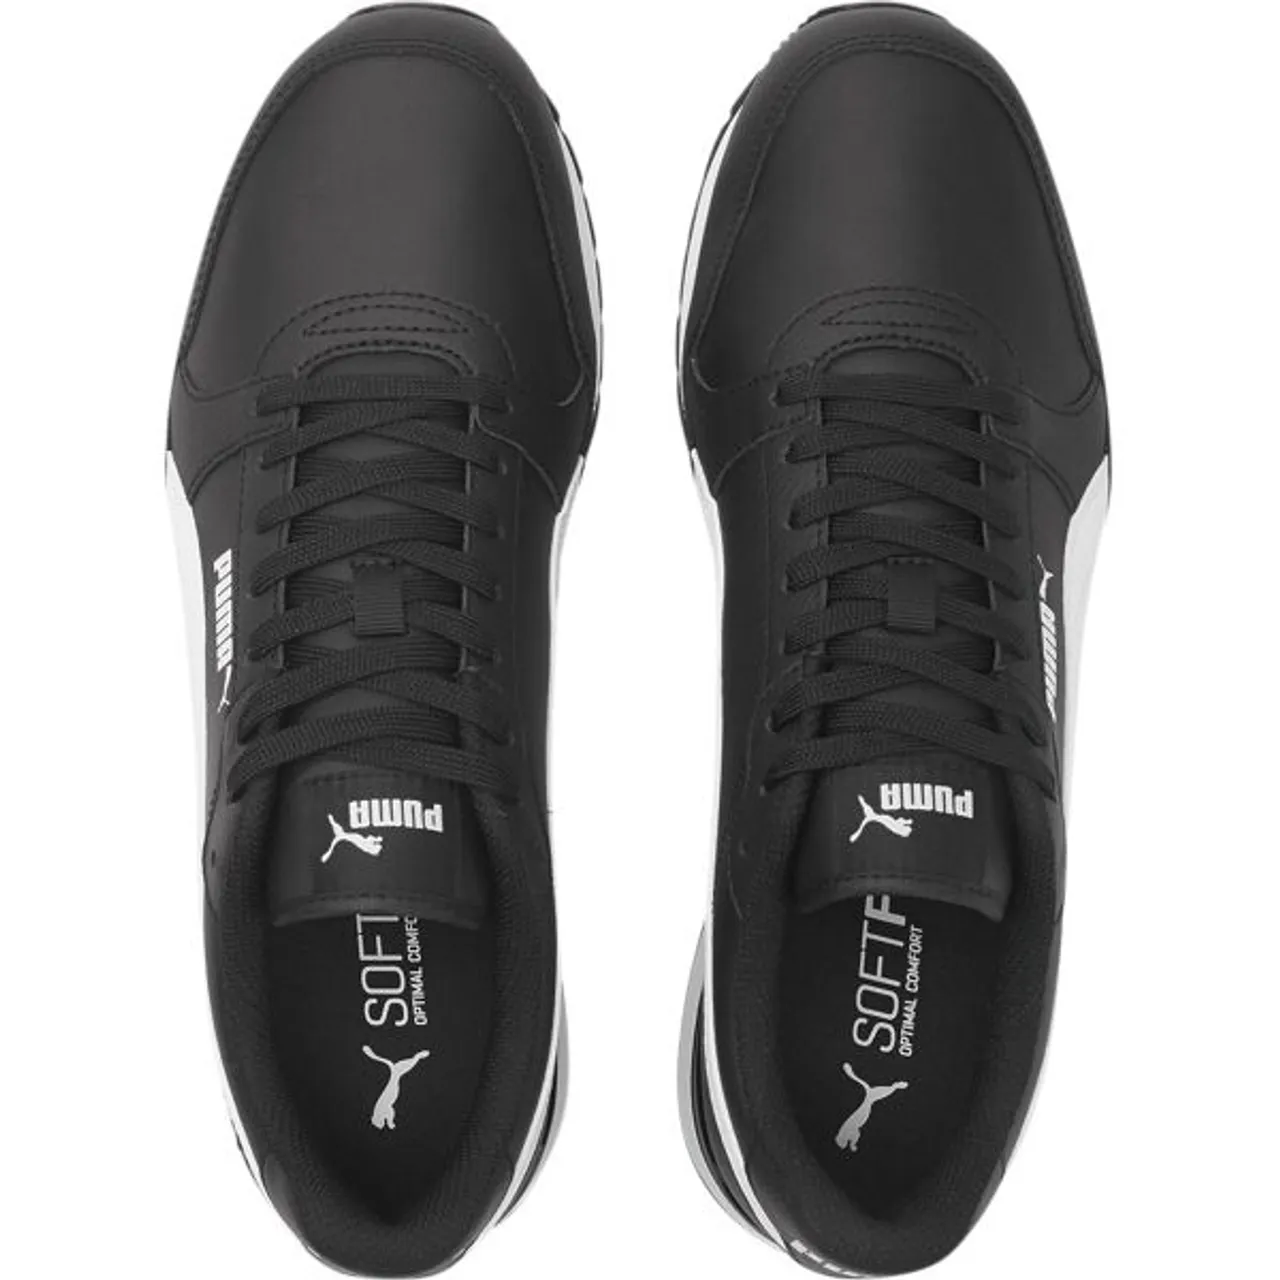 Sneaker PUMA "ST RUNNER V3 L" Gr. 45, schwarz-weiß (puma black, puma white) Schuhe Puma